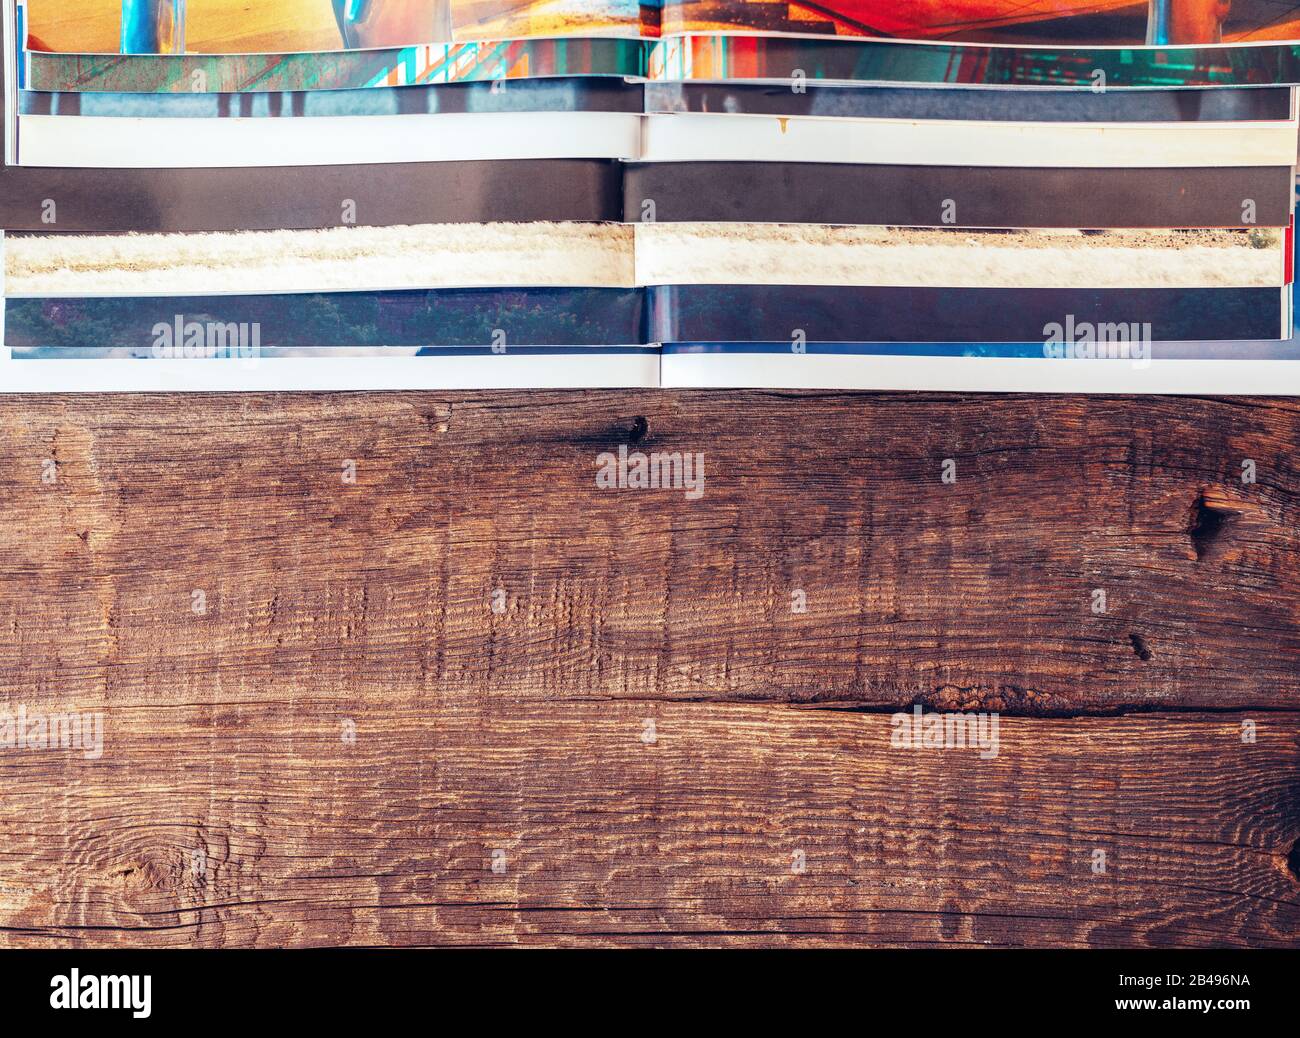 Draufsicht über Haufen verschiedener Boulevardmagazine und überlagerte Magazine auf Holztisch. Konzept für Hintergrundtexturen Stockfoto